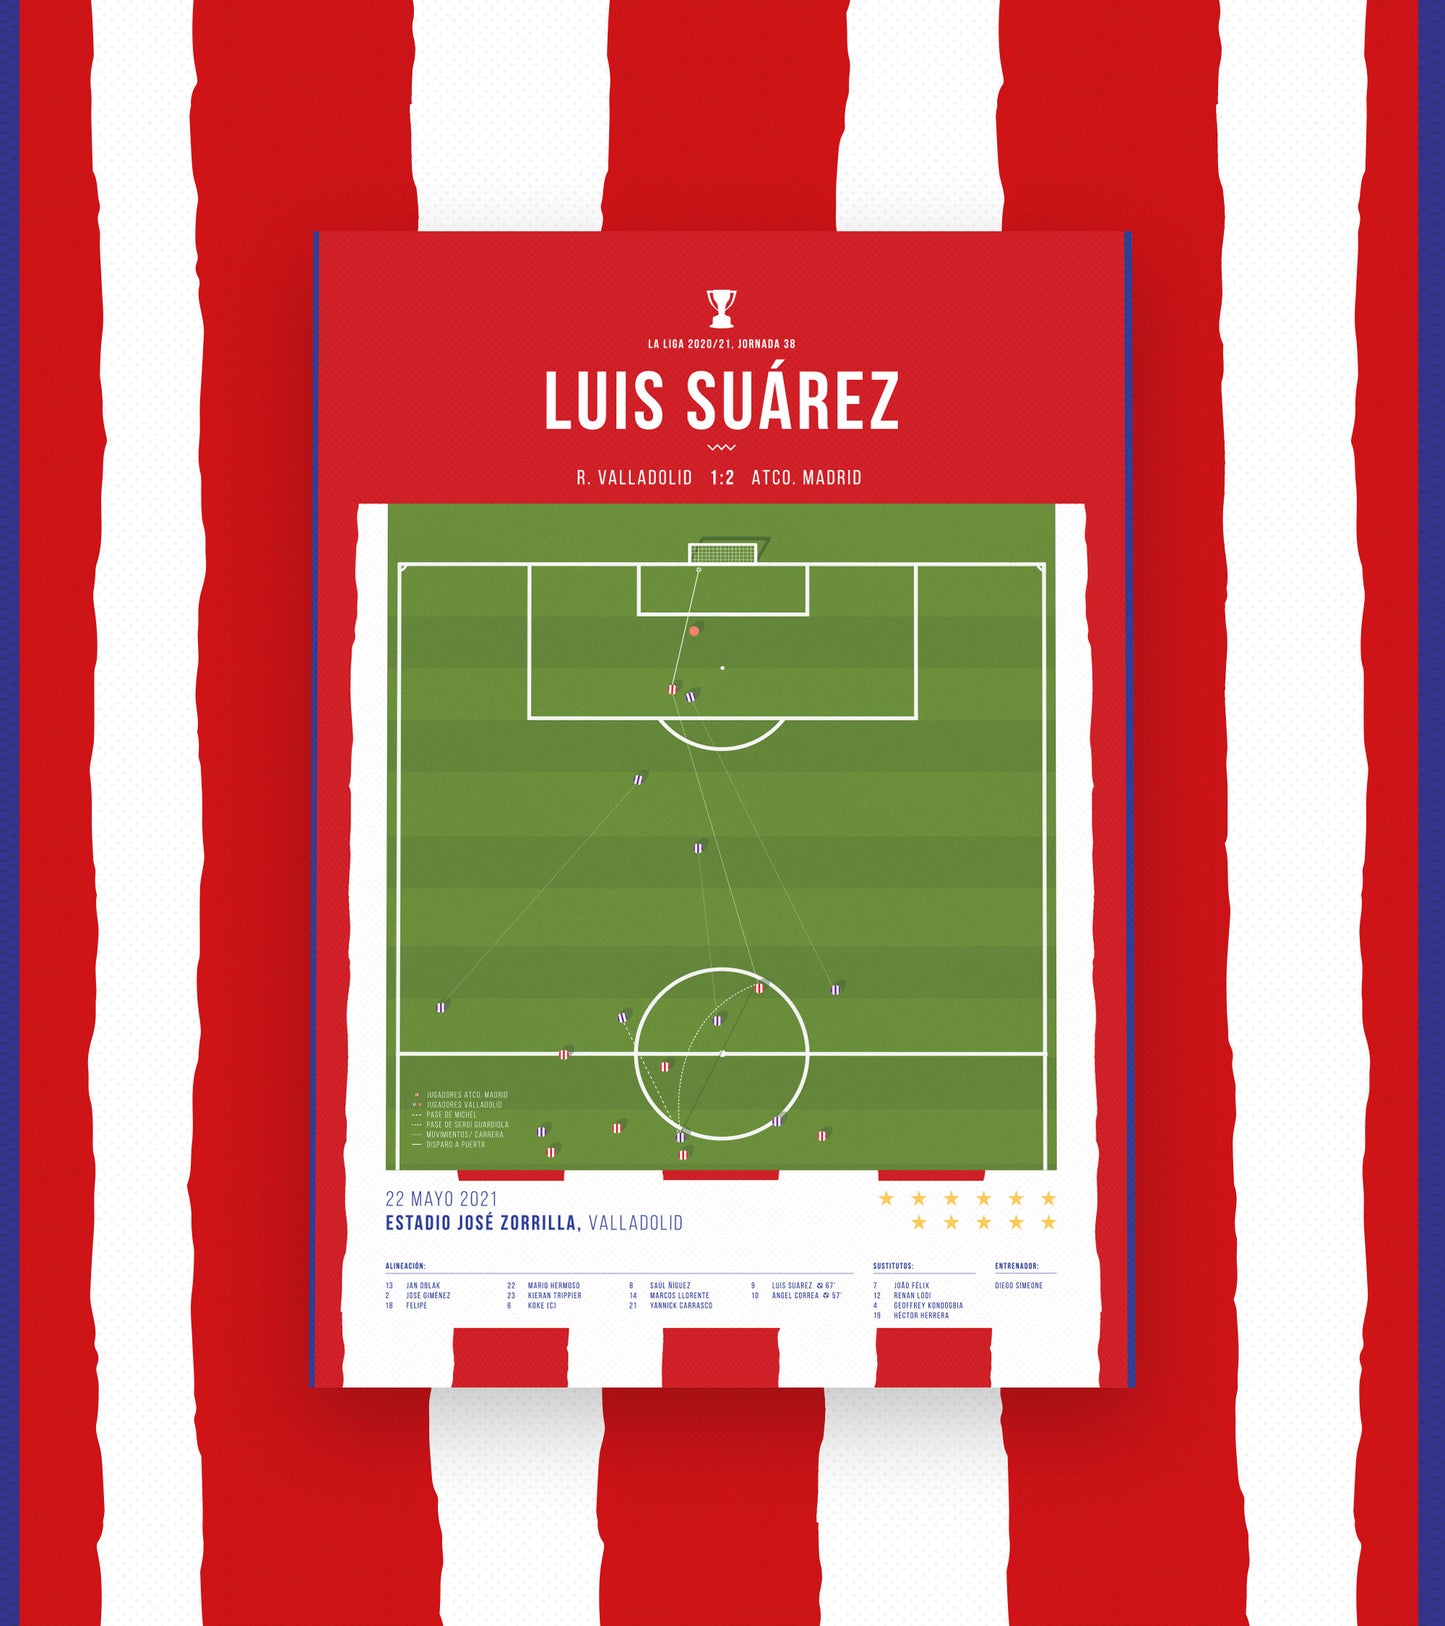 Luis Suárez scores a goal that is worth a Liga title